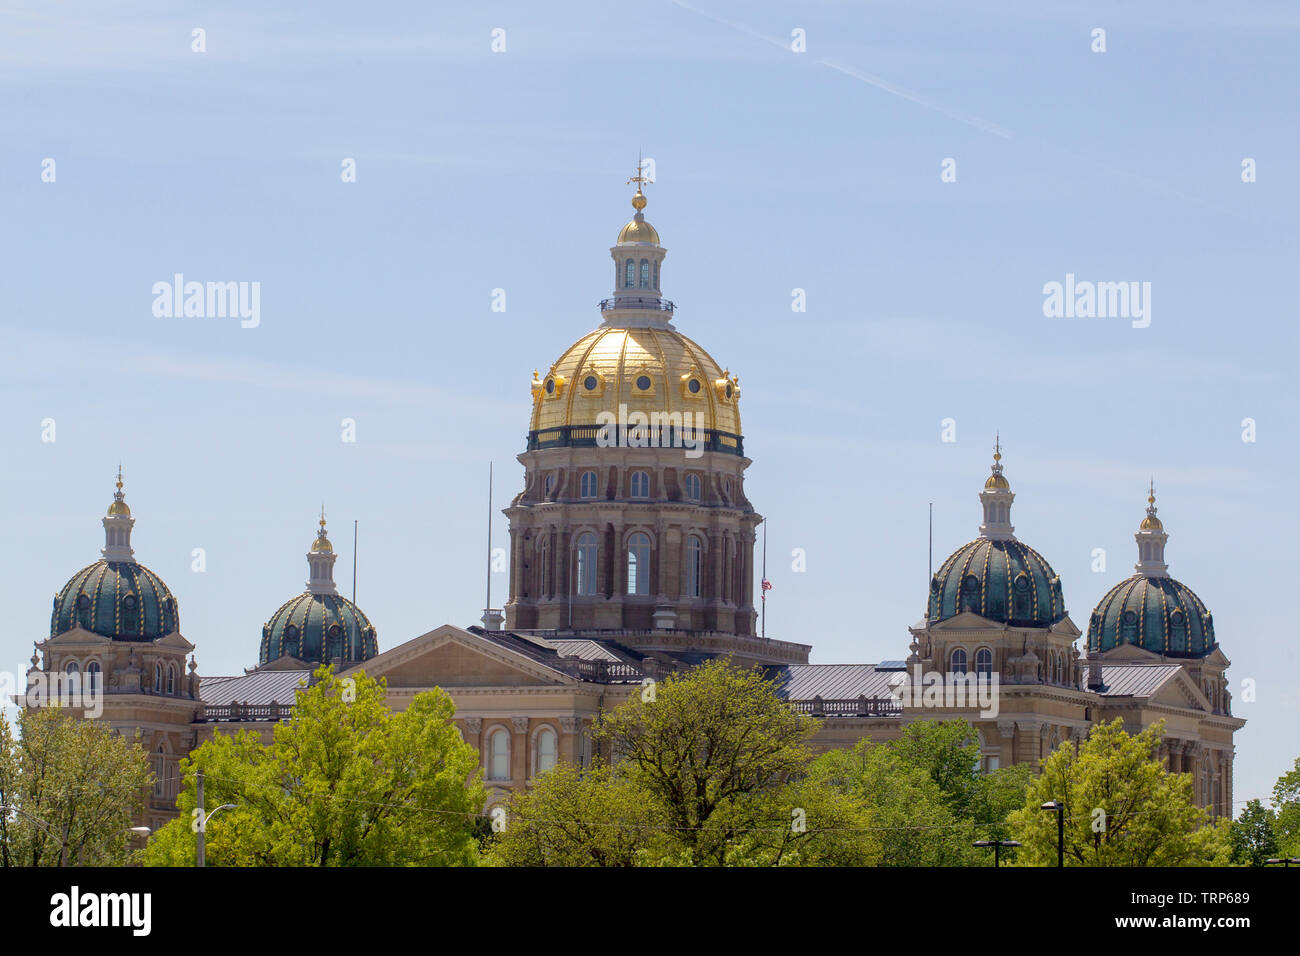 L'Iowa State Capitol, aussi appelé l'Iowa Statehouse, est dans la capitale de l'Iowa, Des Moines. C'est le seul 5-state capitol dôme dans le pays Banque D'Images